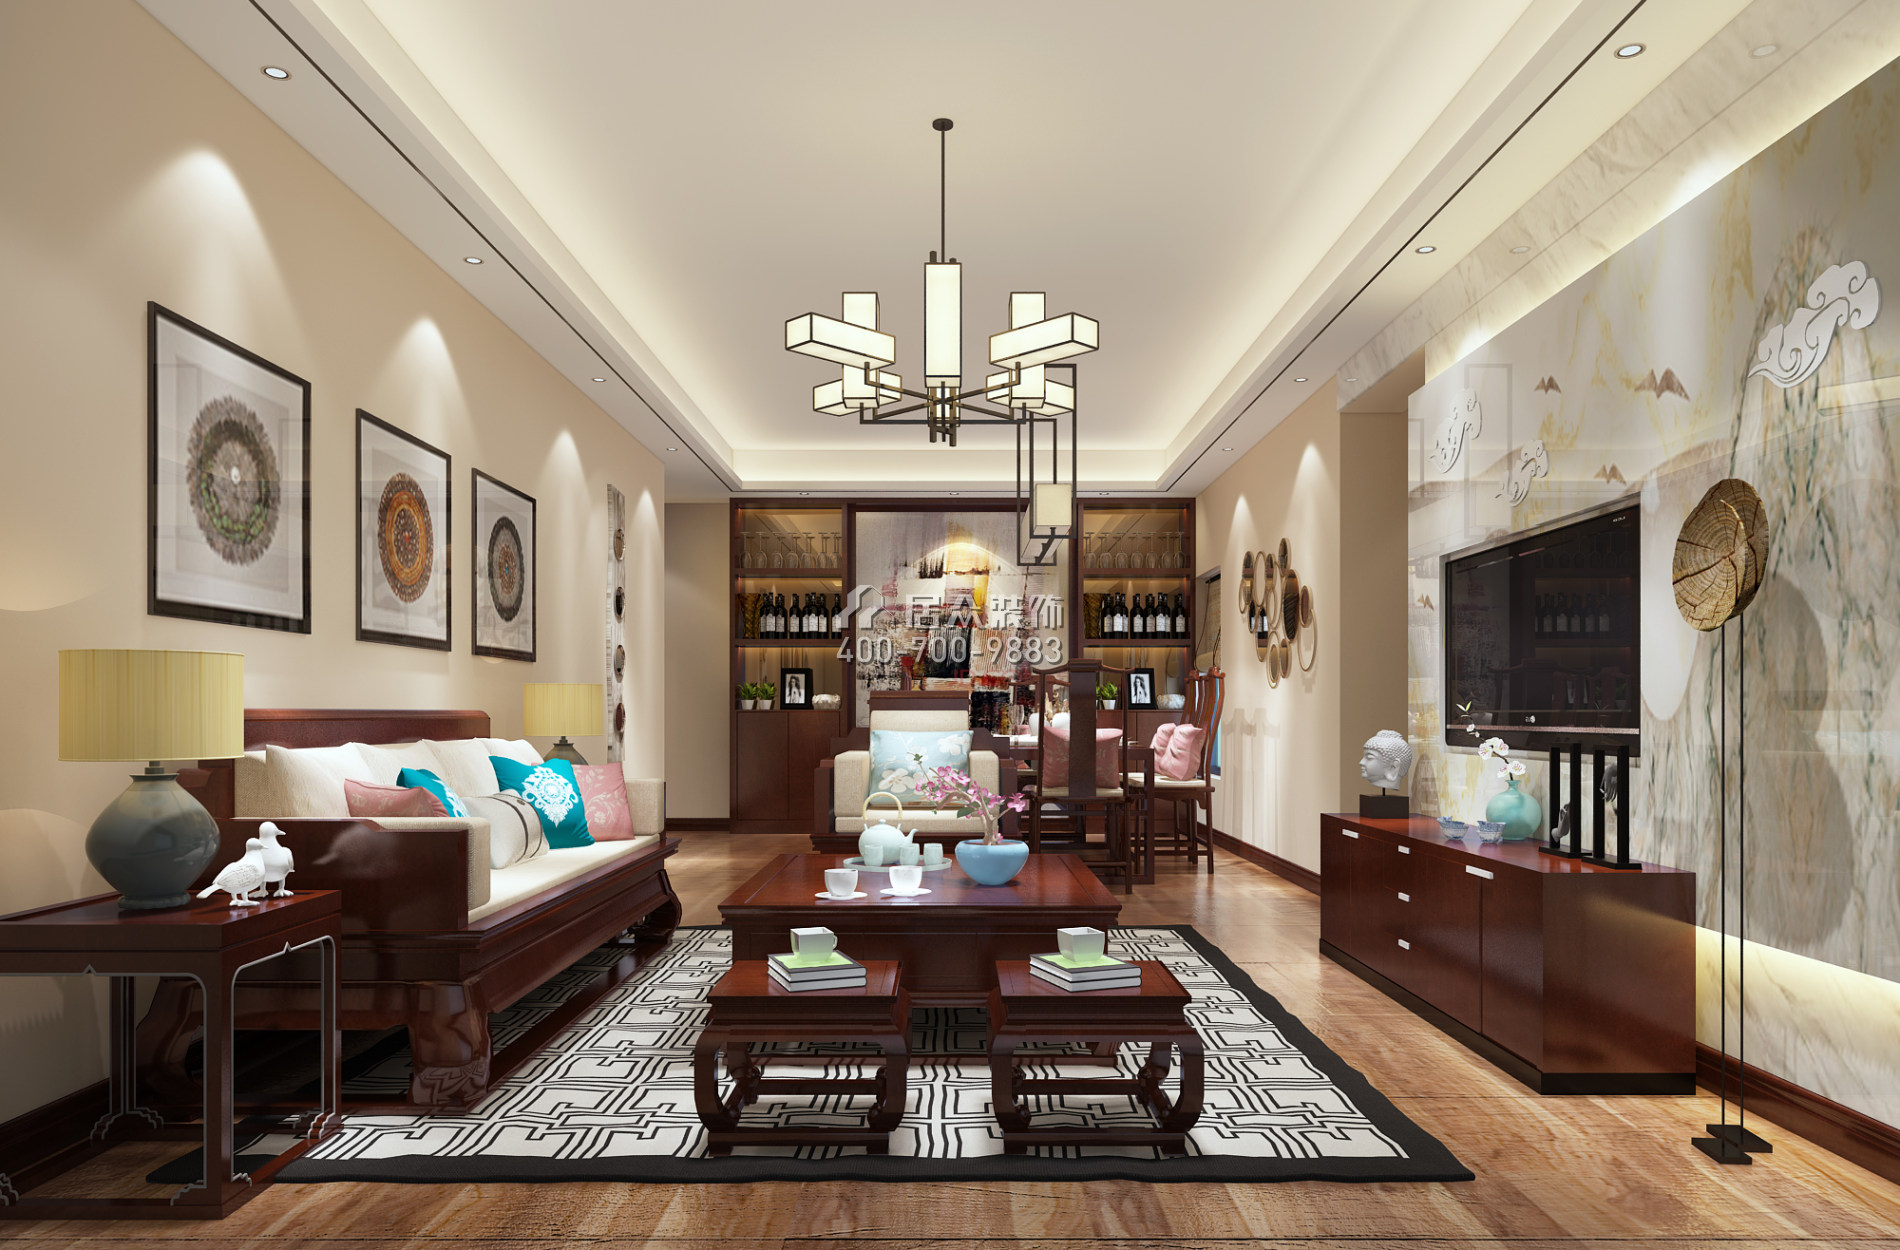 海印长城二期120平方米中式风格平层户型客厅装修效果图